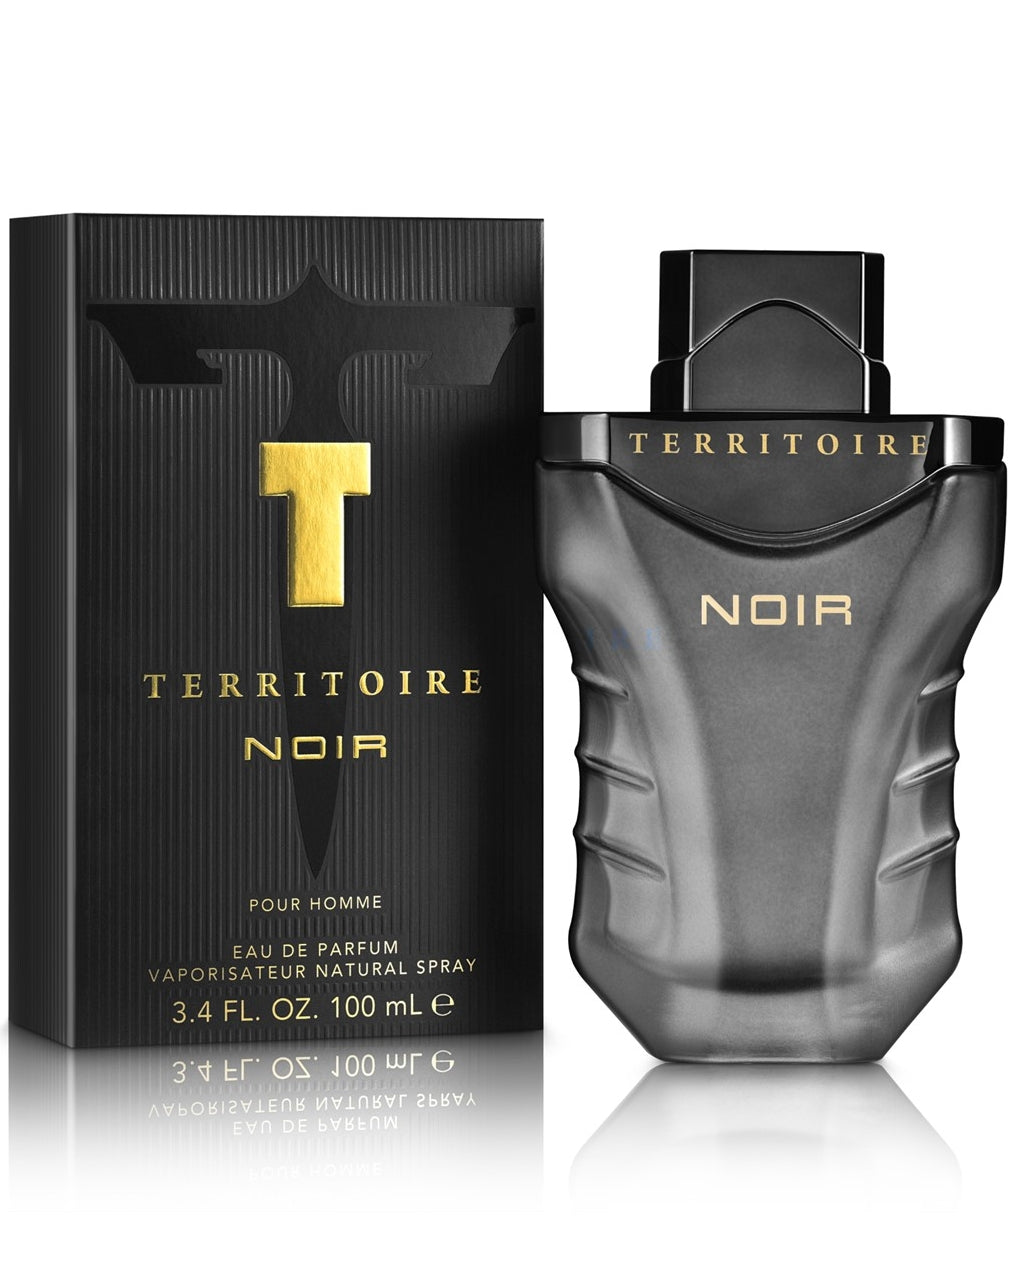 Territoire Noir for Men Eau de Parfum 3.4oz